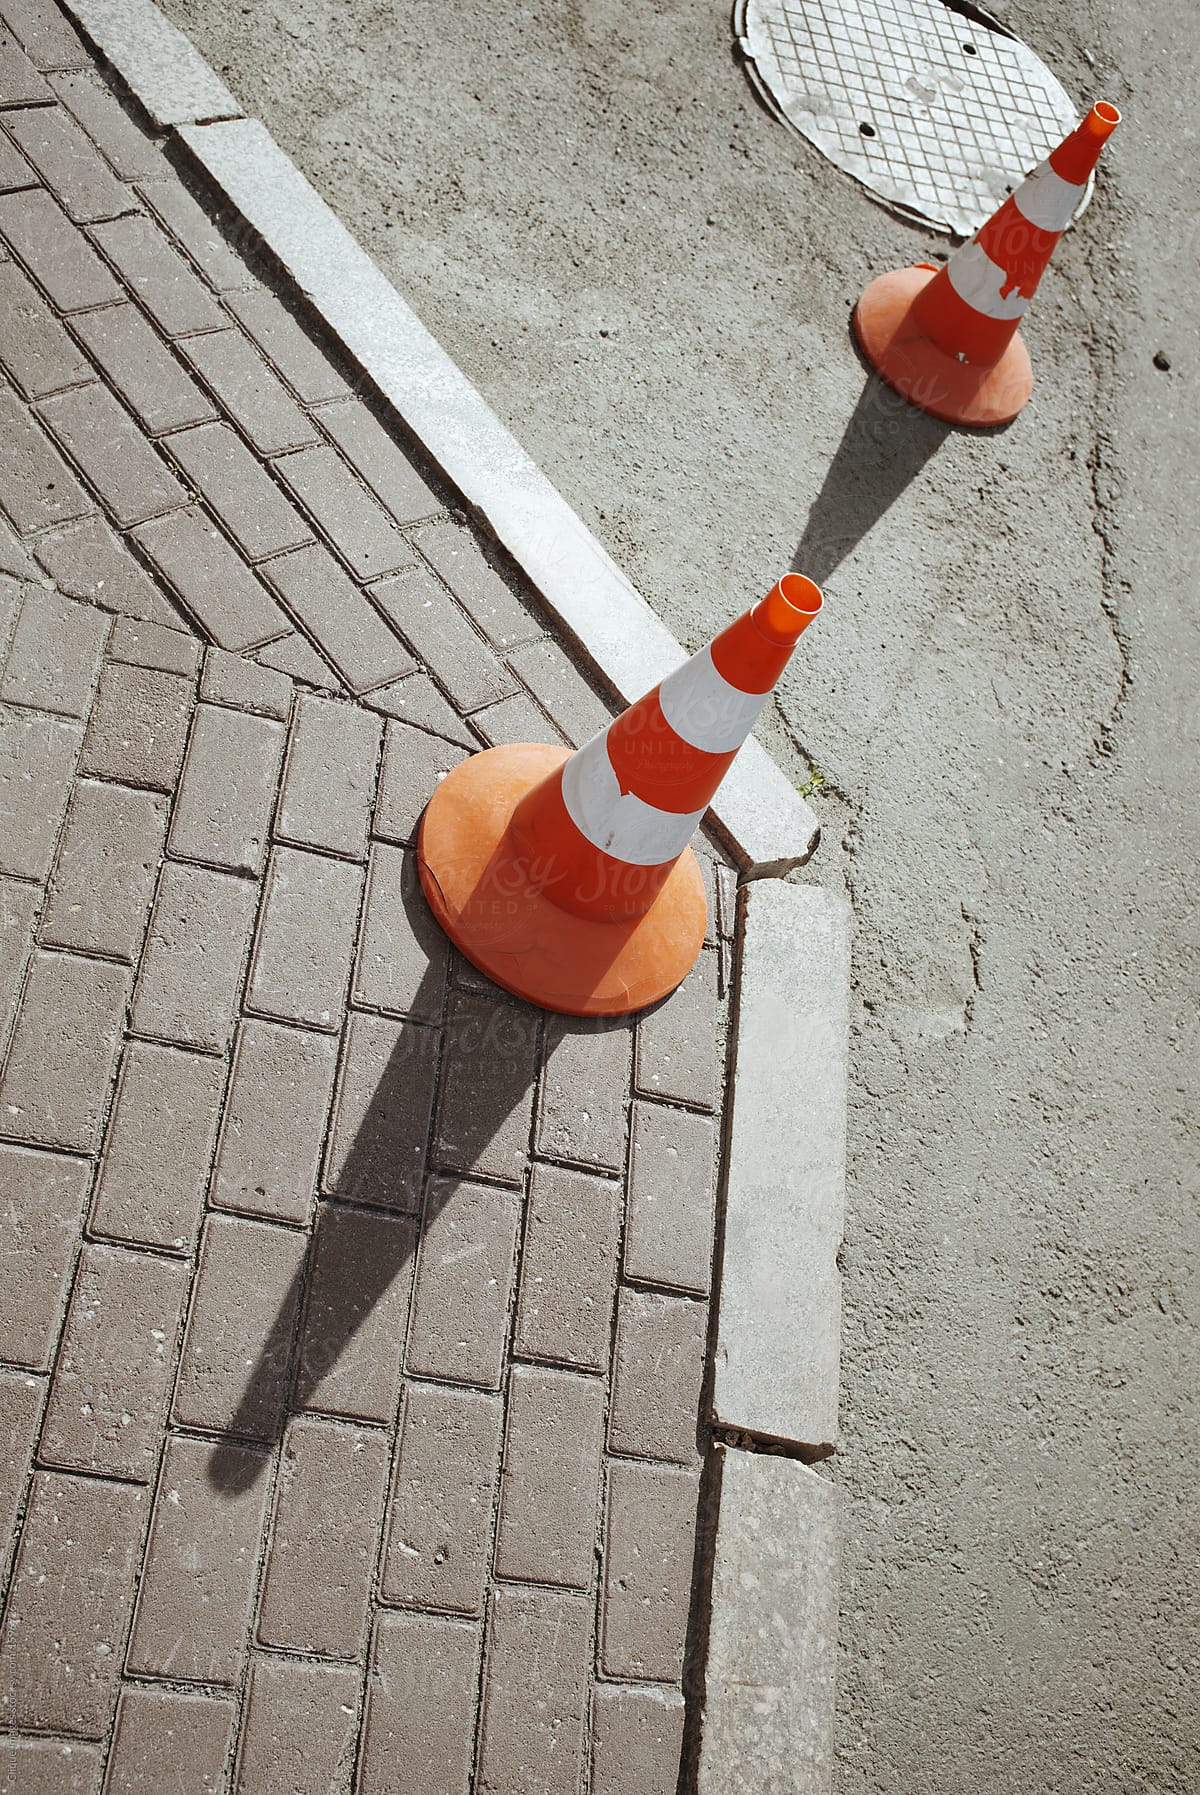 Traffic cones in pedestrian area